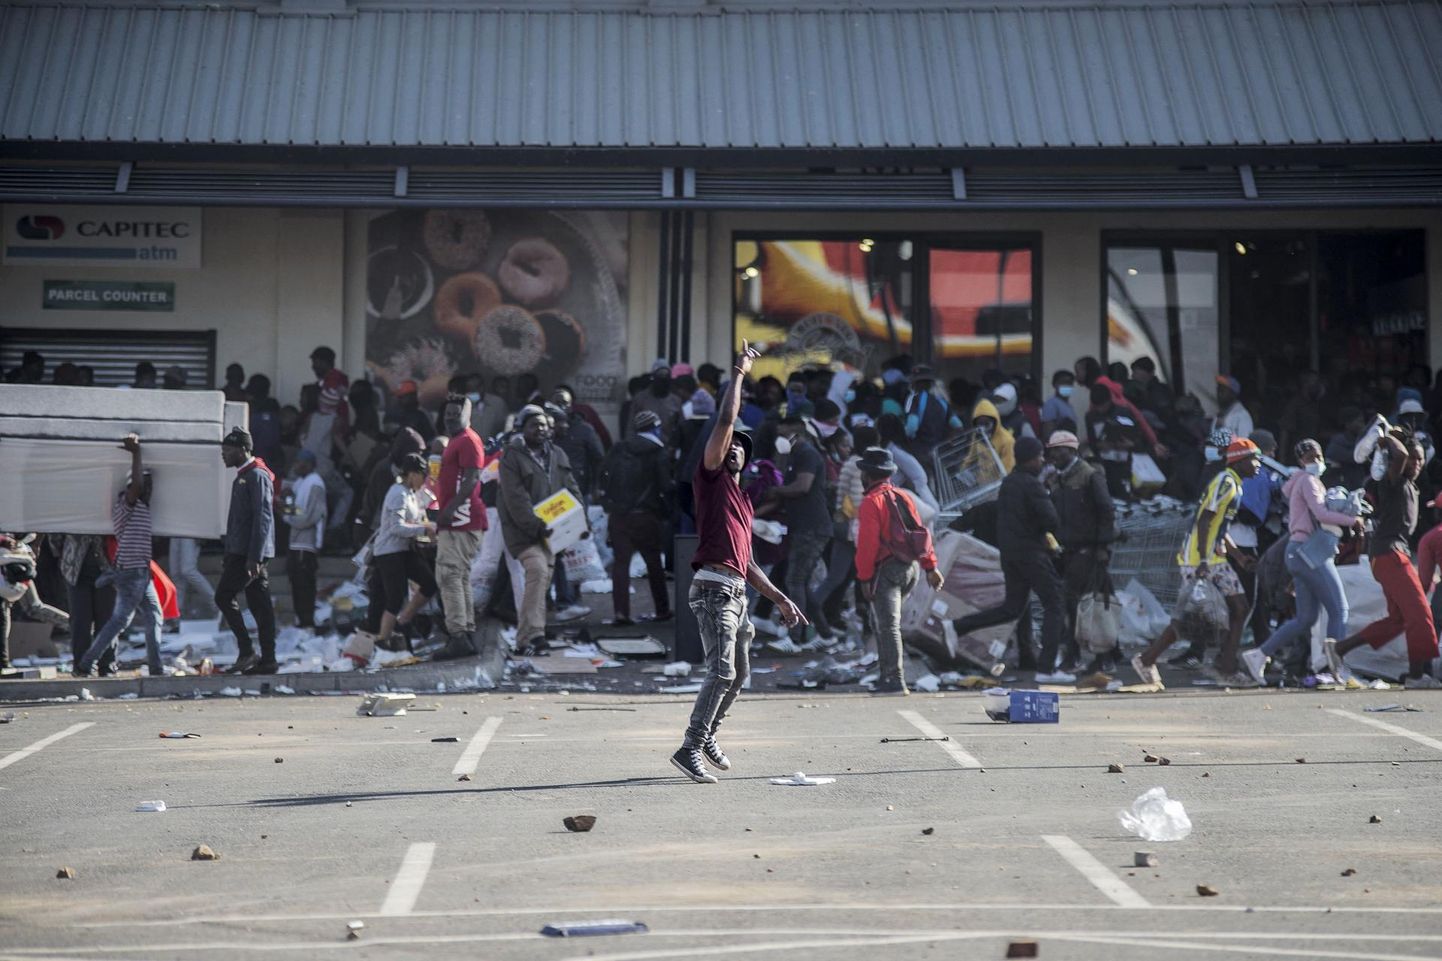 Rüüstajad Jabulani kaubanduskeskuse juures Johannesburgis Soweto piirkonnas juuli keskel. Ekspresident Jacob Zuma vahistamisele järgnenud rahutused kasvasid peagi ulatuslikuks vägivallaks ja riisumiseks. 